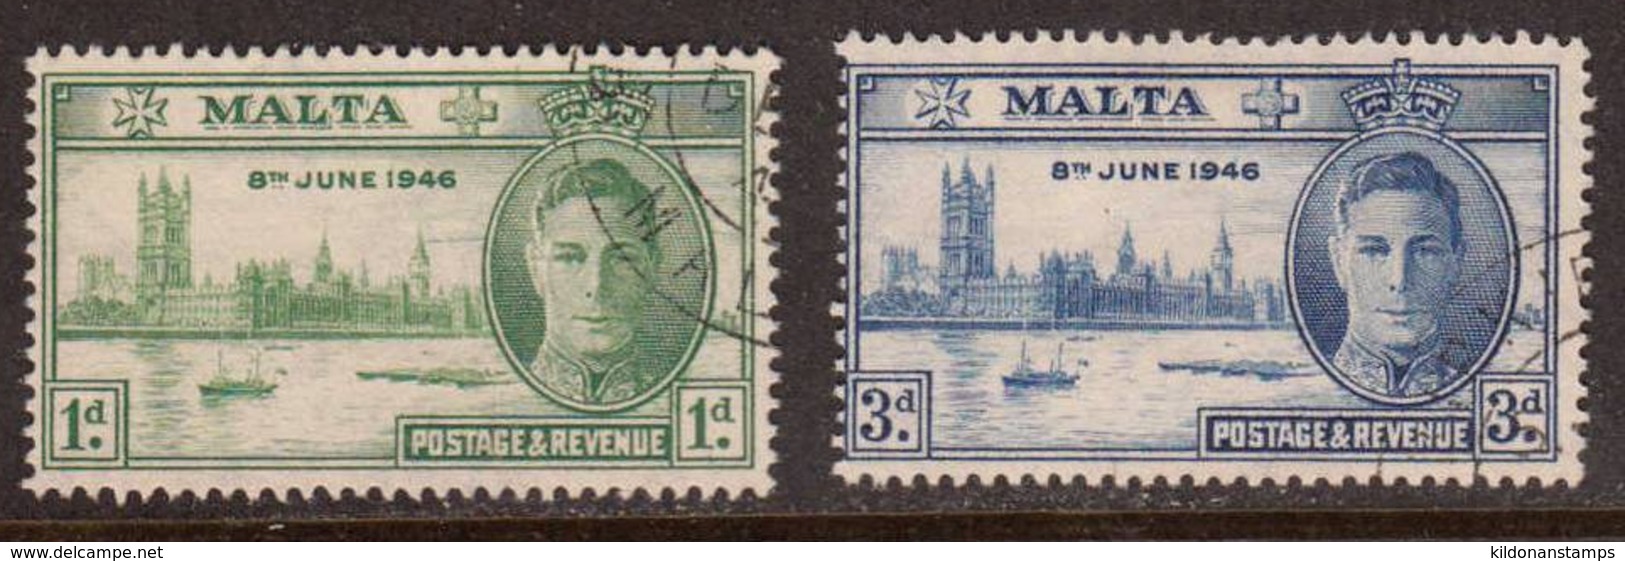 Malta 1946 Peace Issue, Used, Sc# 206-207, SG 232-233 - Malte